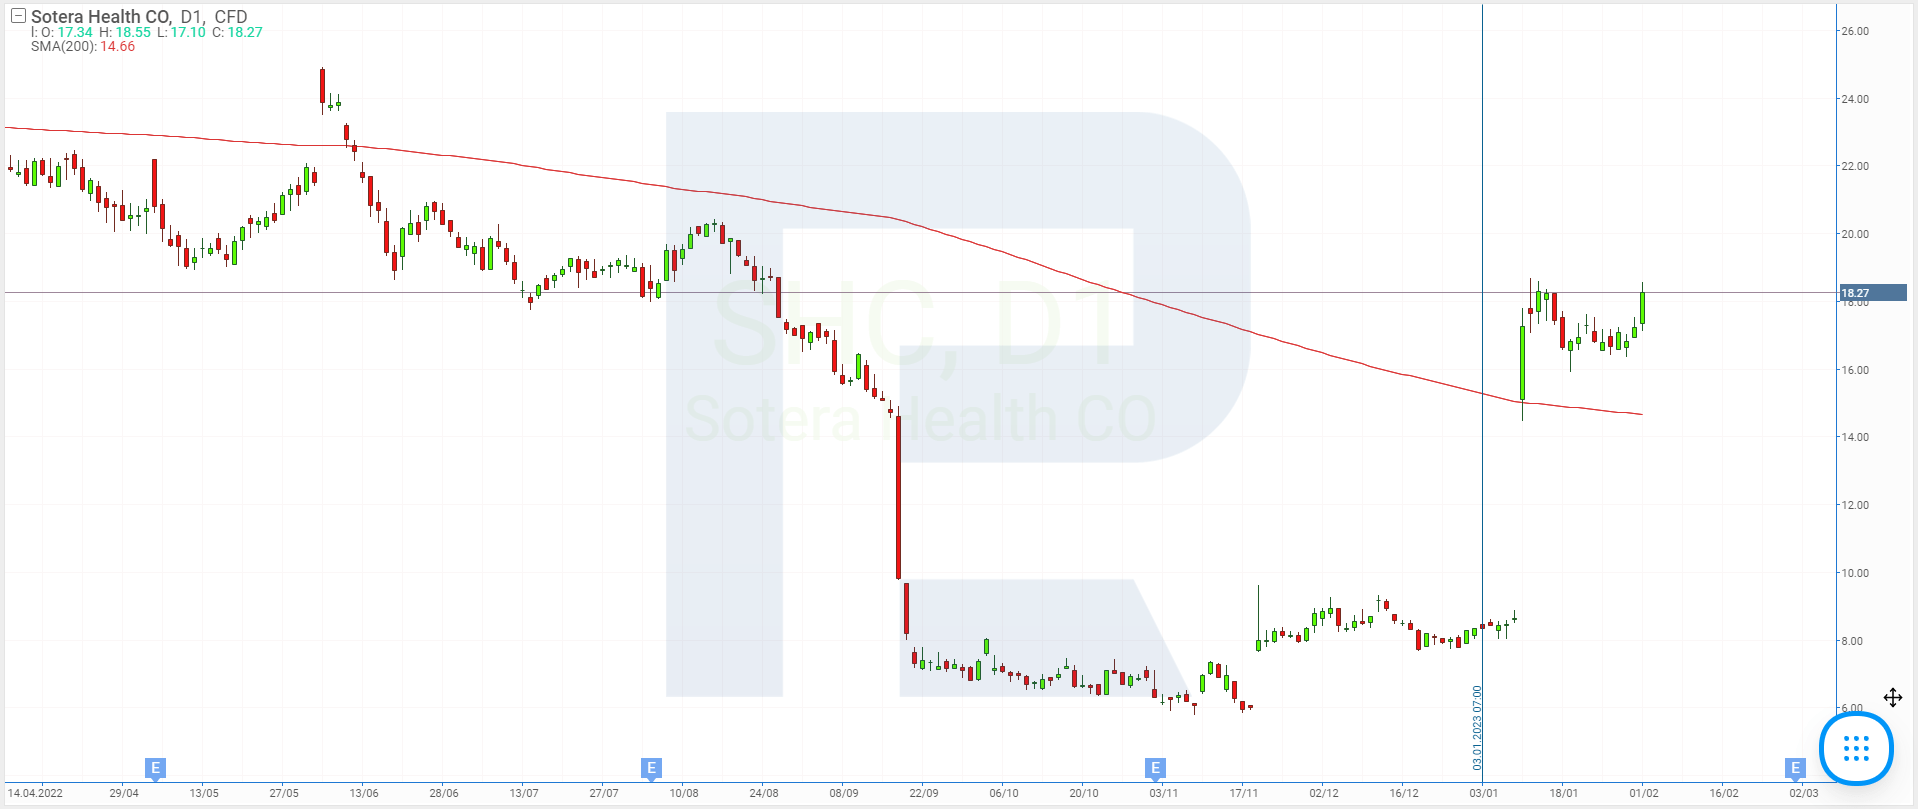 Stock price charts of Sotera Health Company